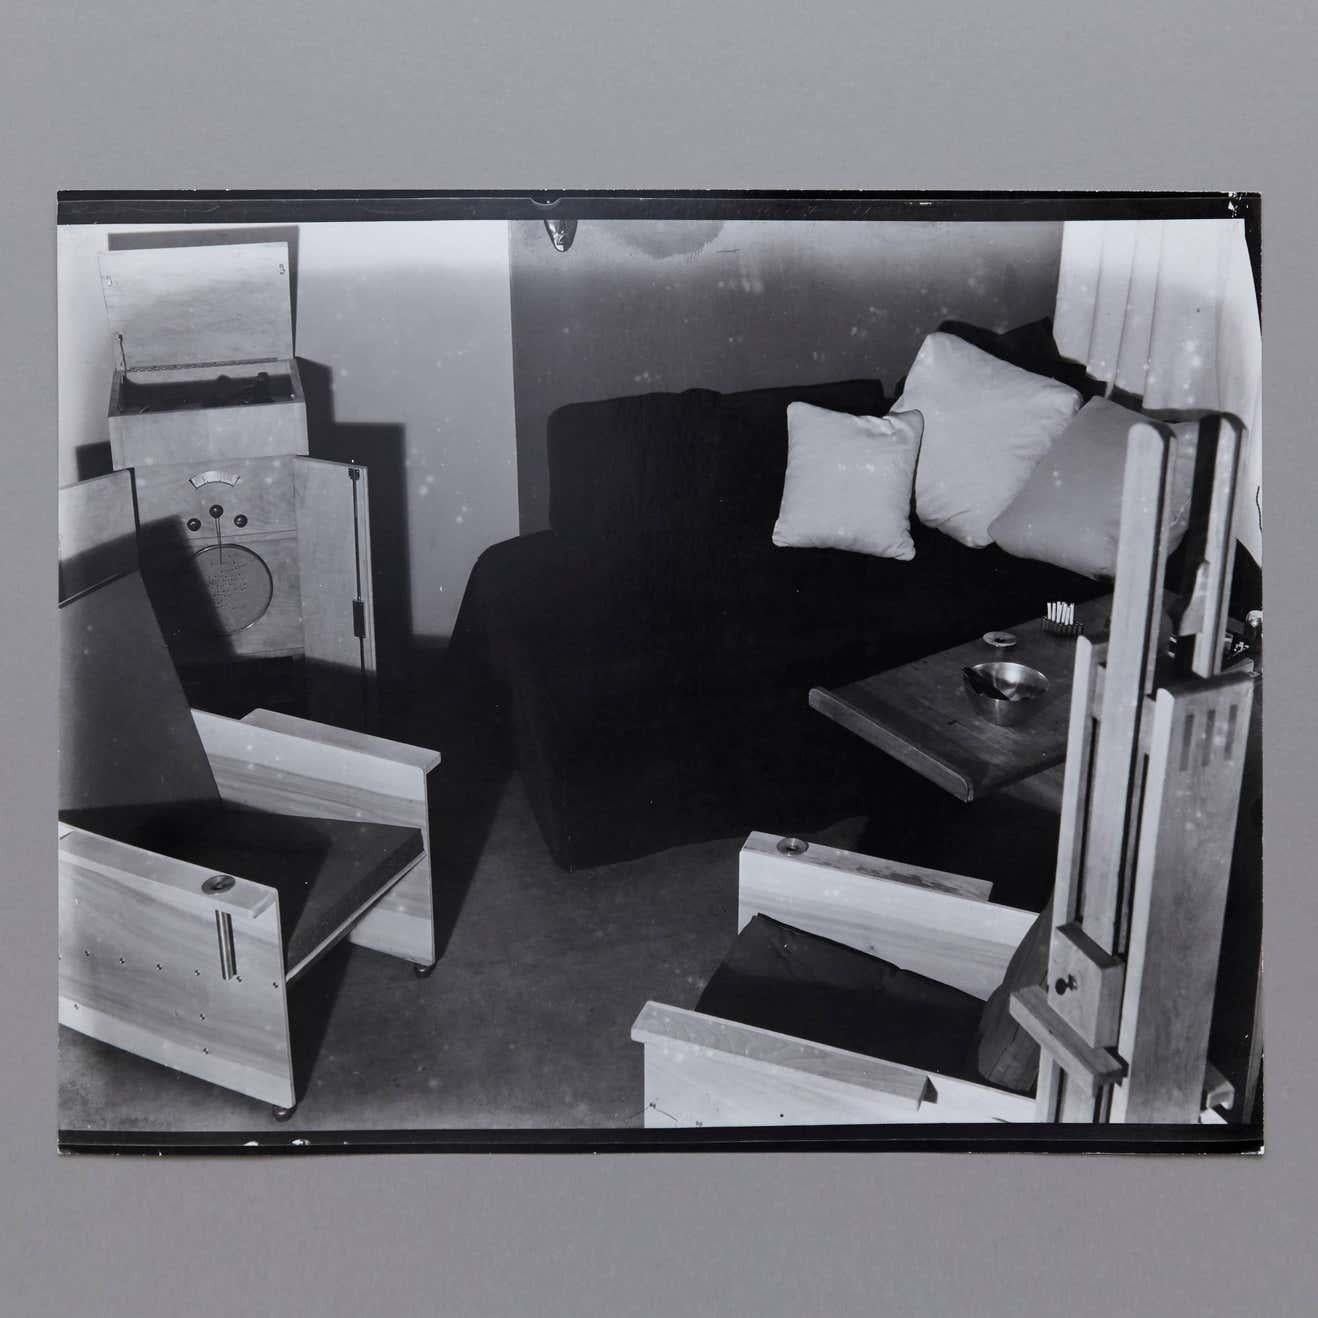 Le Studio Man Ray photographié par Man Ray.

Tirage posthume d'après le négatif original vers 1970 par Pierre Gassmann. Gélatine bromure d'argent.

Né (Philadelphie, 1890 - Paris, 1976) Emmanuel Radnitzky, Man Ray adopte son pseudonyme en 1909